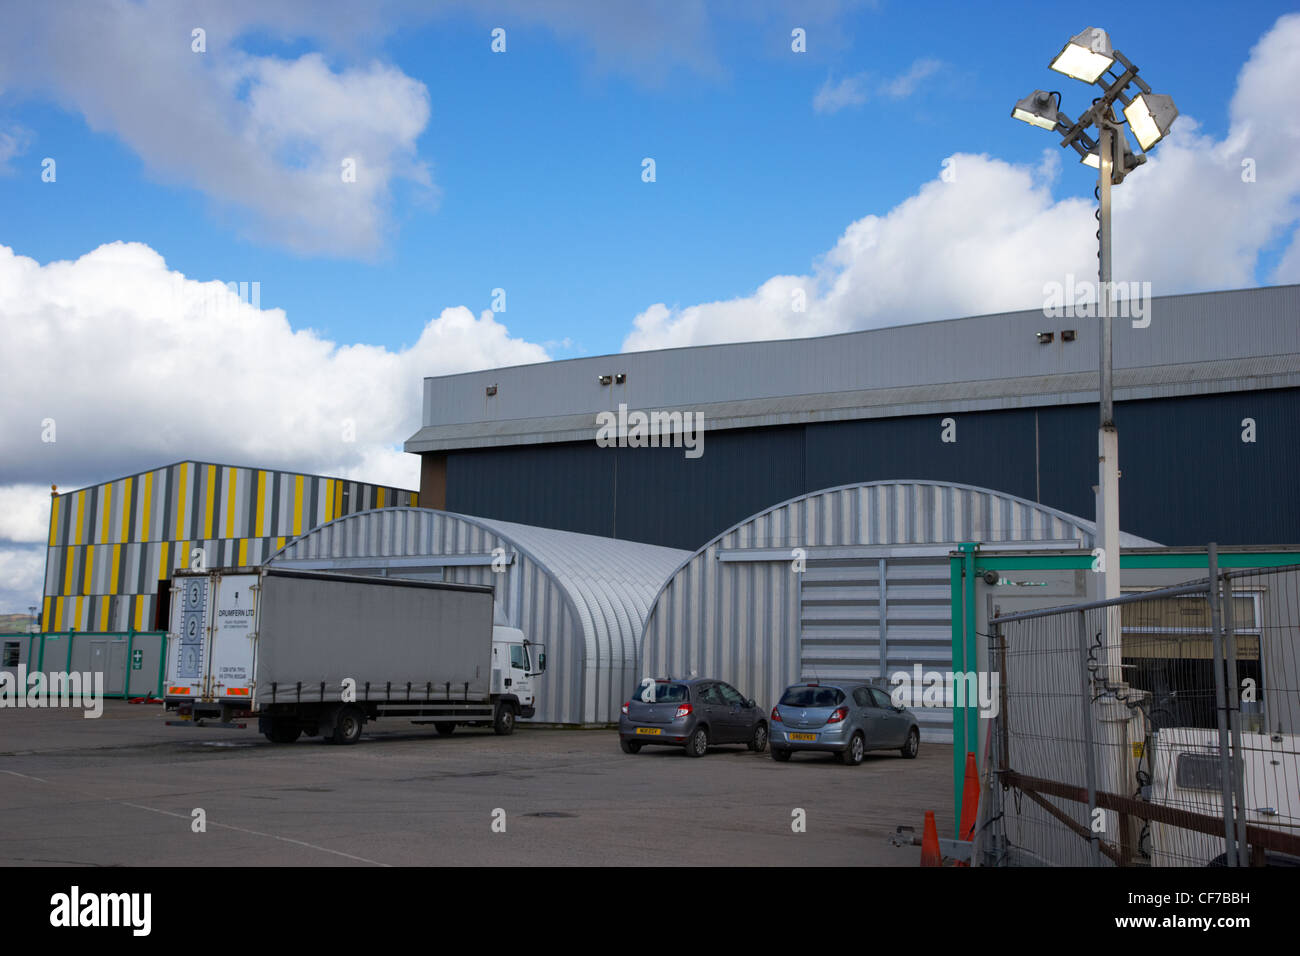 La vernice hall film studios titanic quarter belfast Irlanda del Nord sito di ripresa del gioco di troni Foto Stock